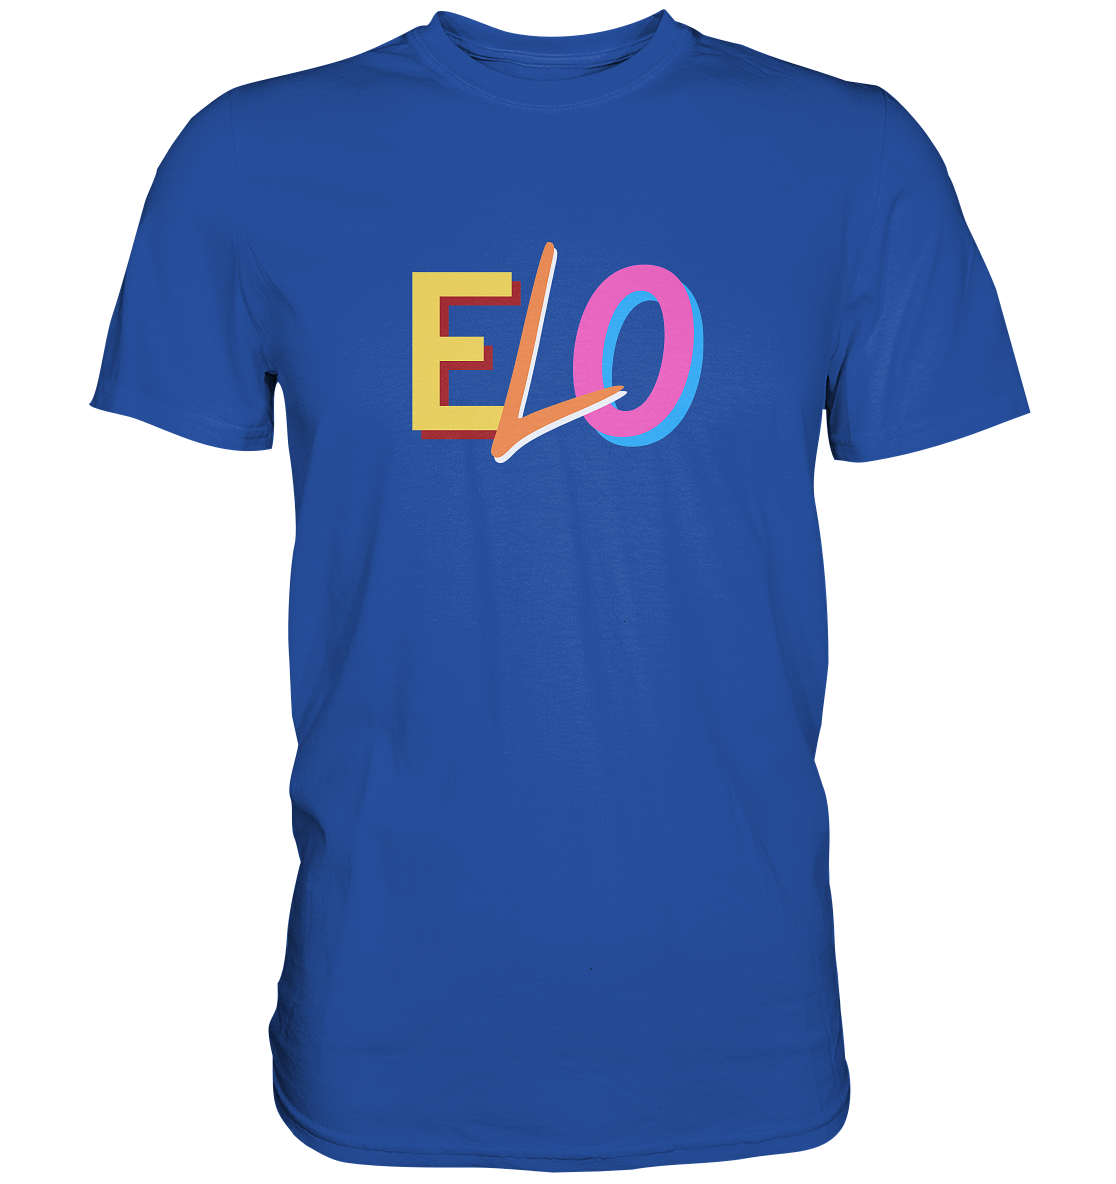 Elo E Elo O (Party Si, Kater No) - Beidseitig bedrucktes Classic Shirt